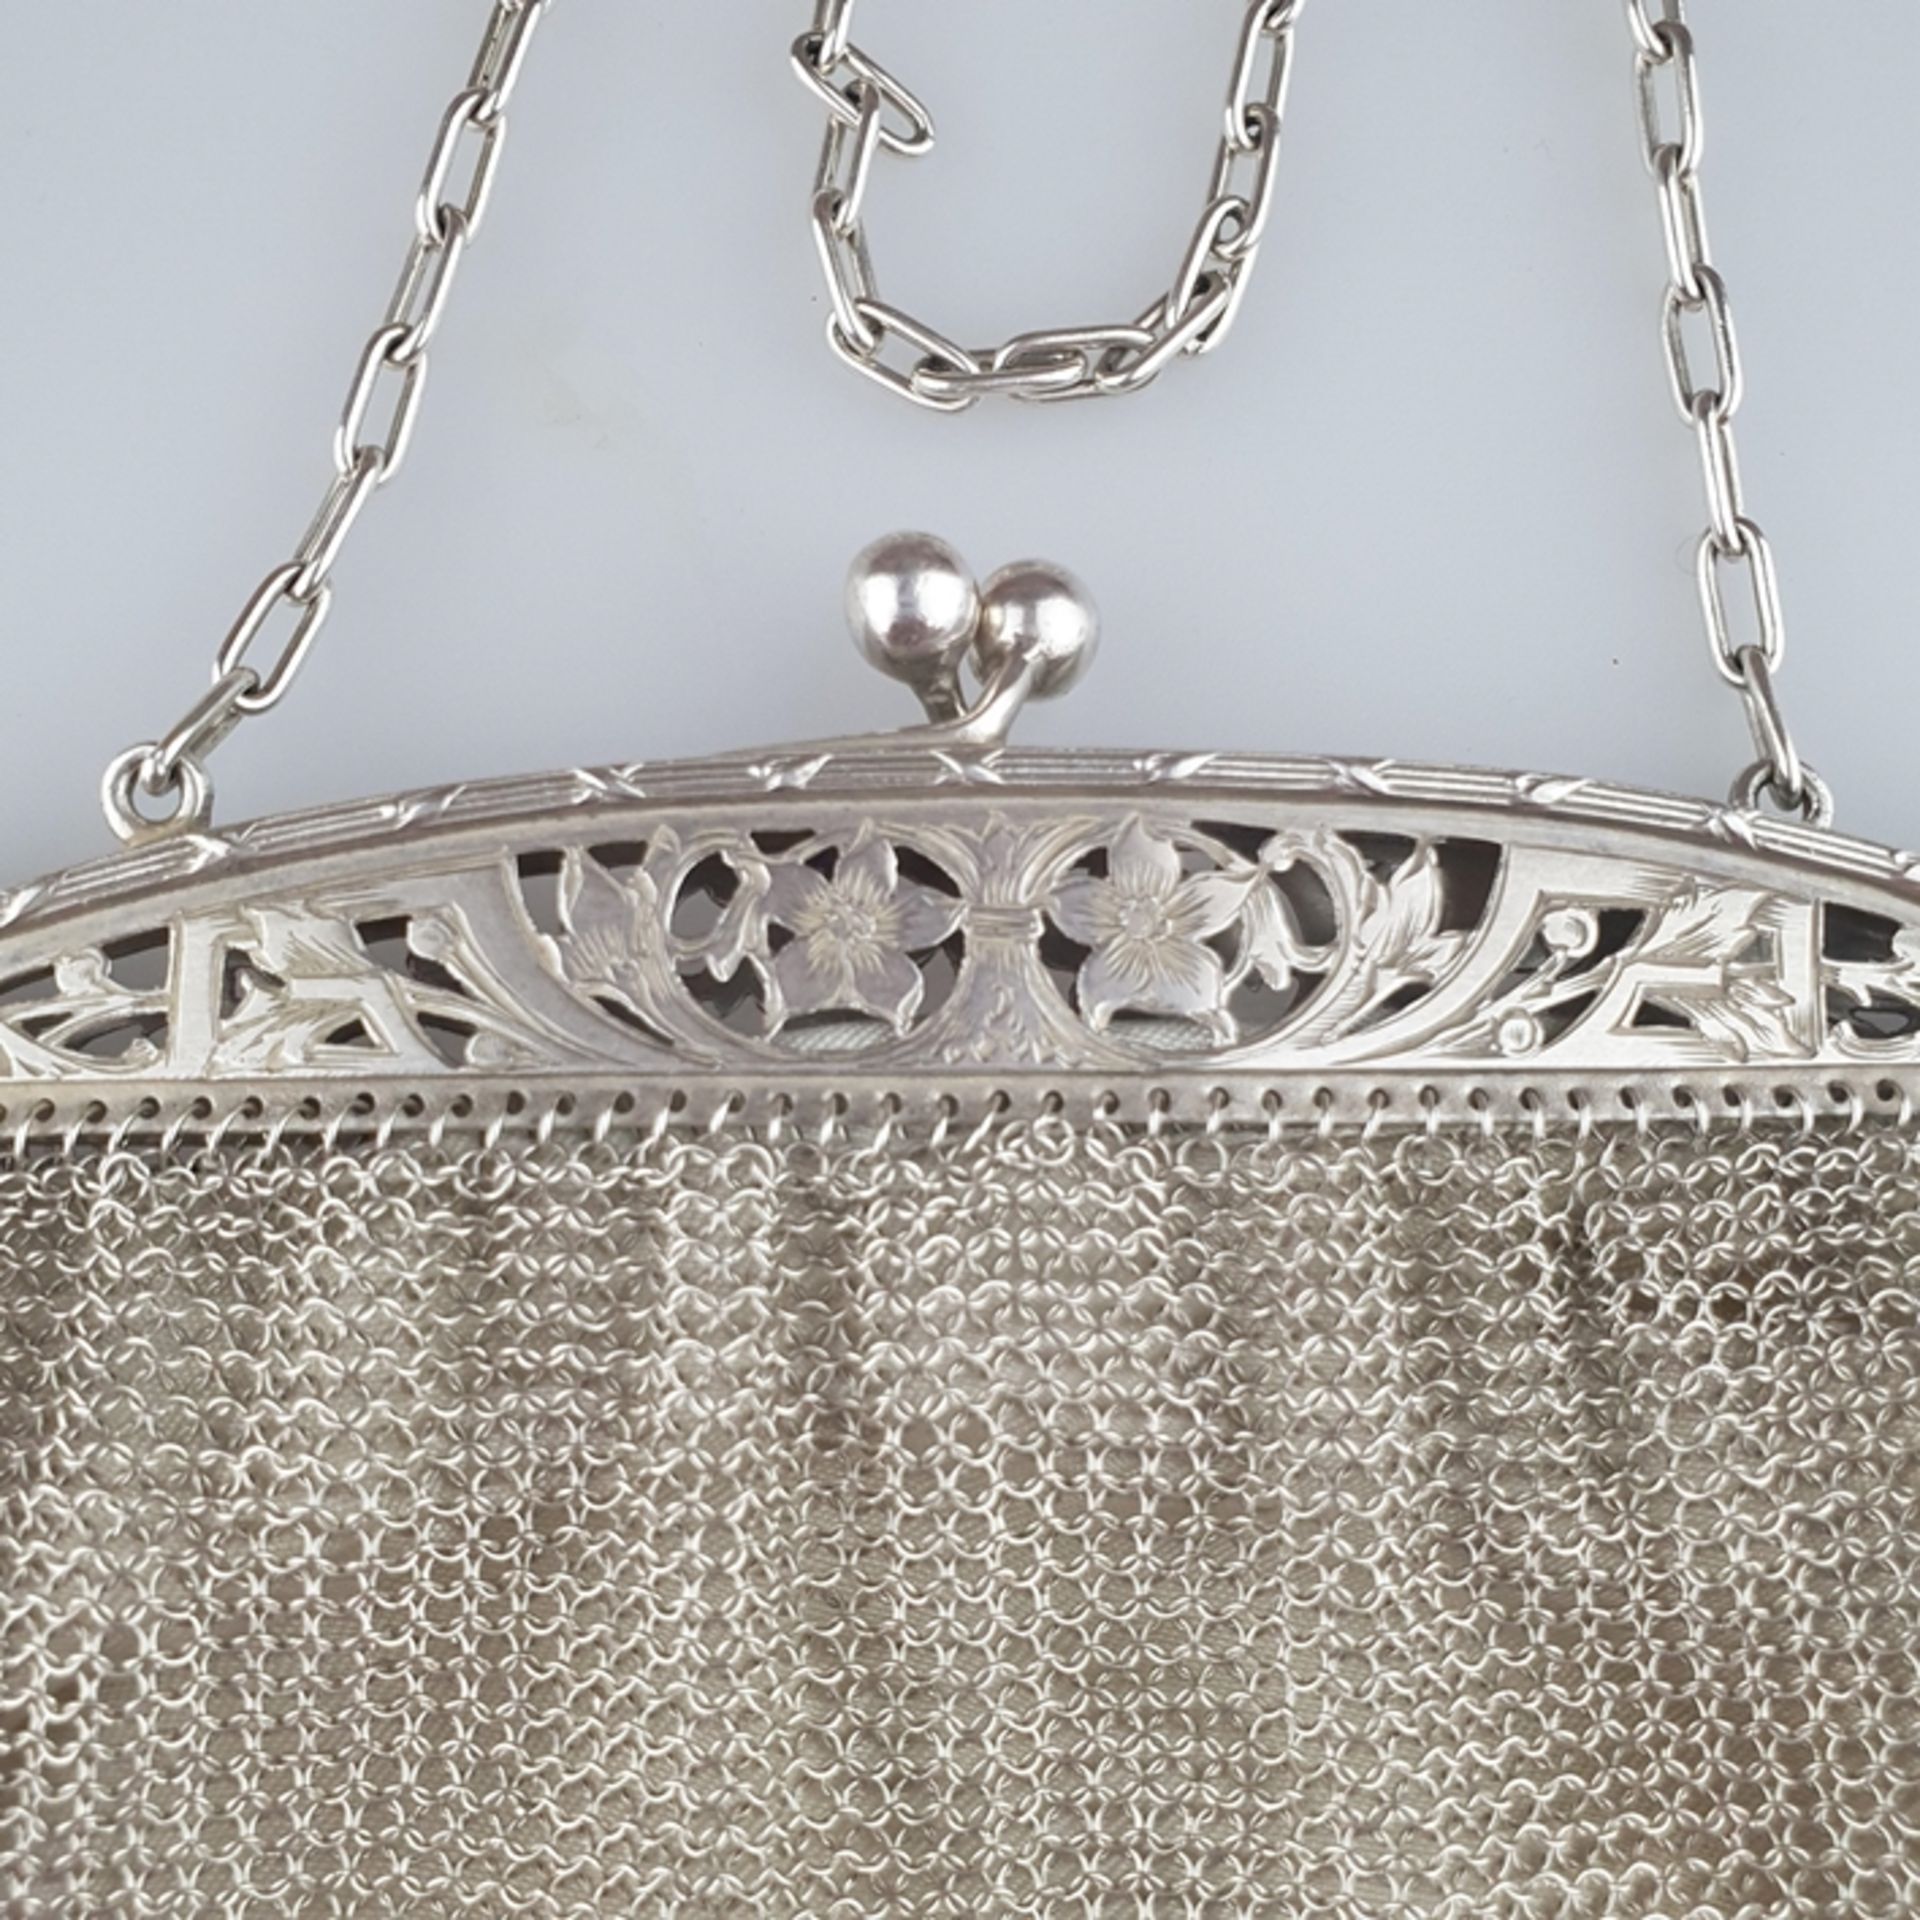 Kettentasche - um 1900, Silber, rechteckige Form aus fein verwirkten Kettenglie - Bild 4 aus 6